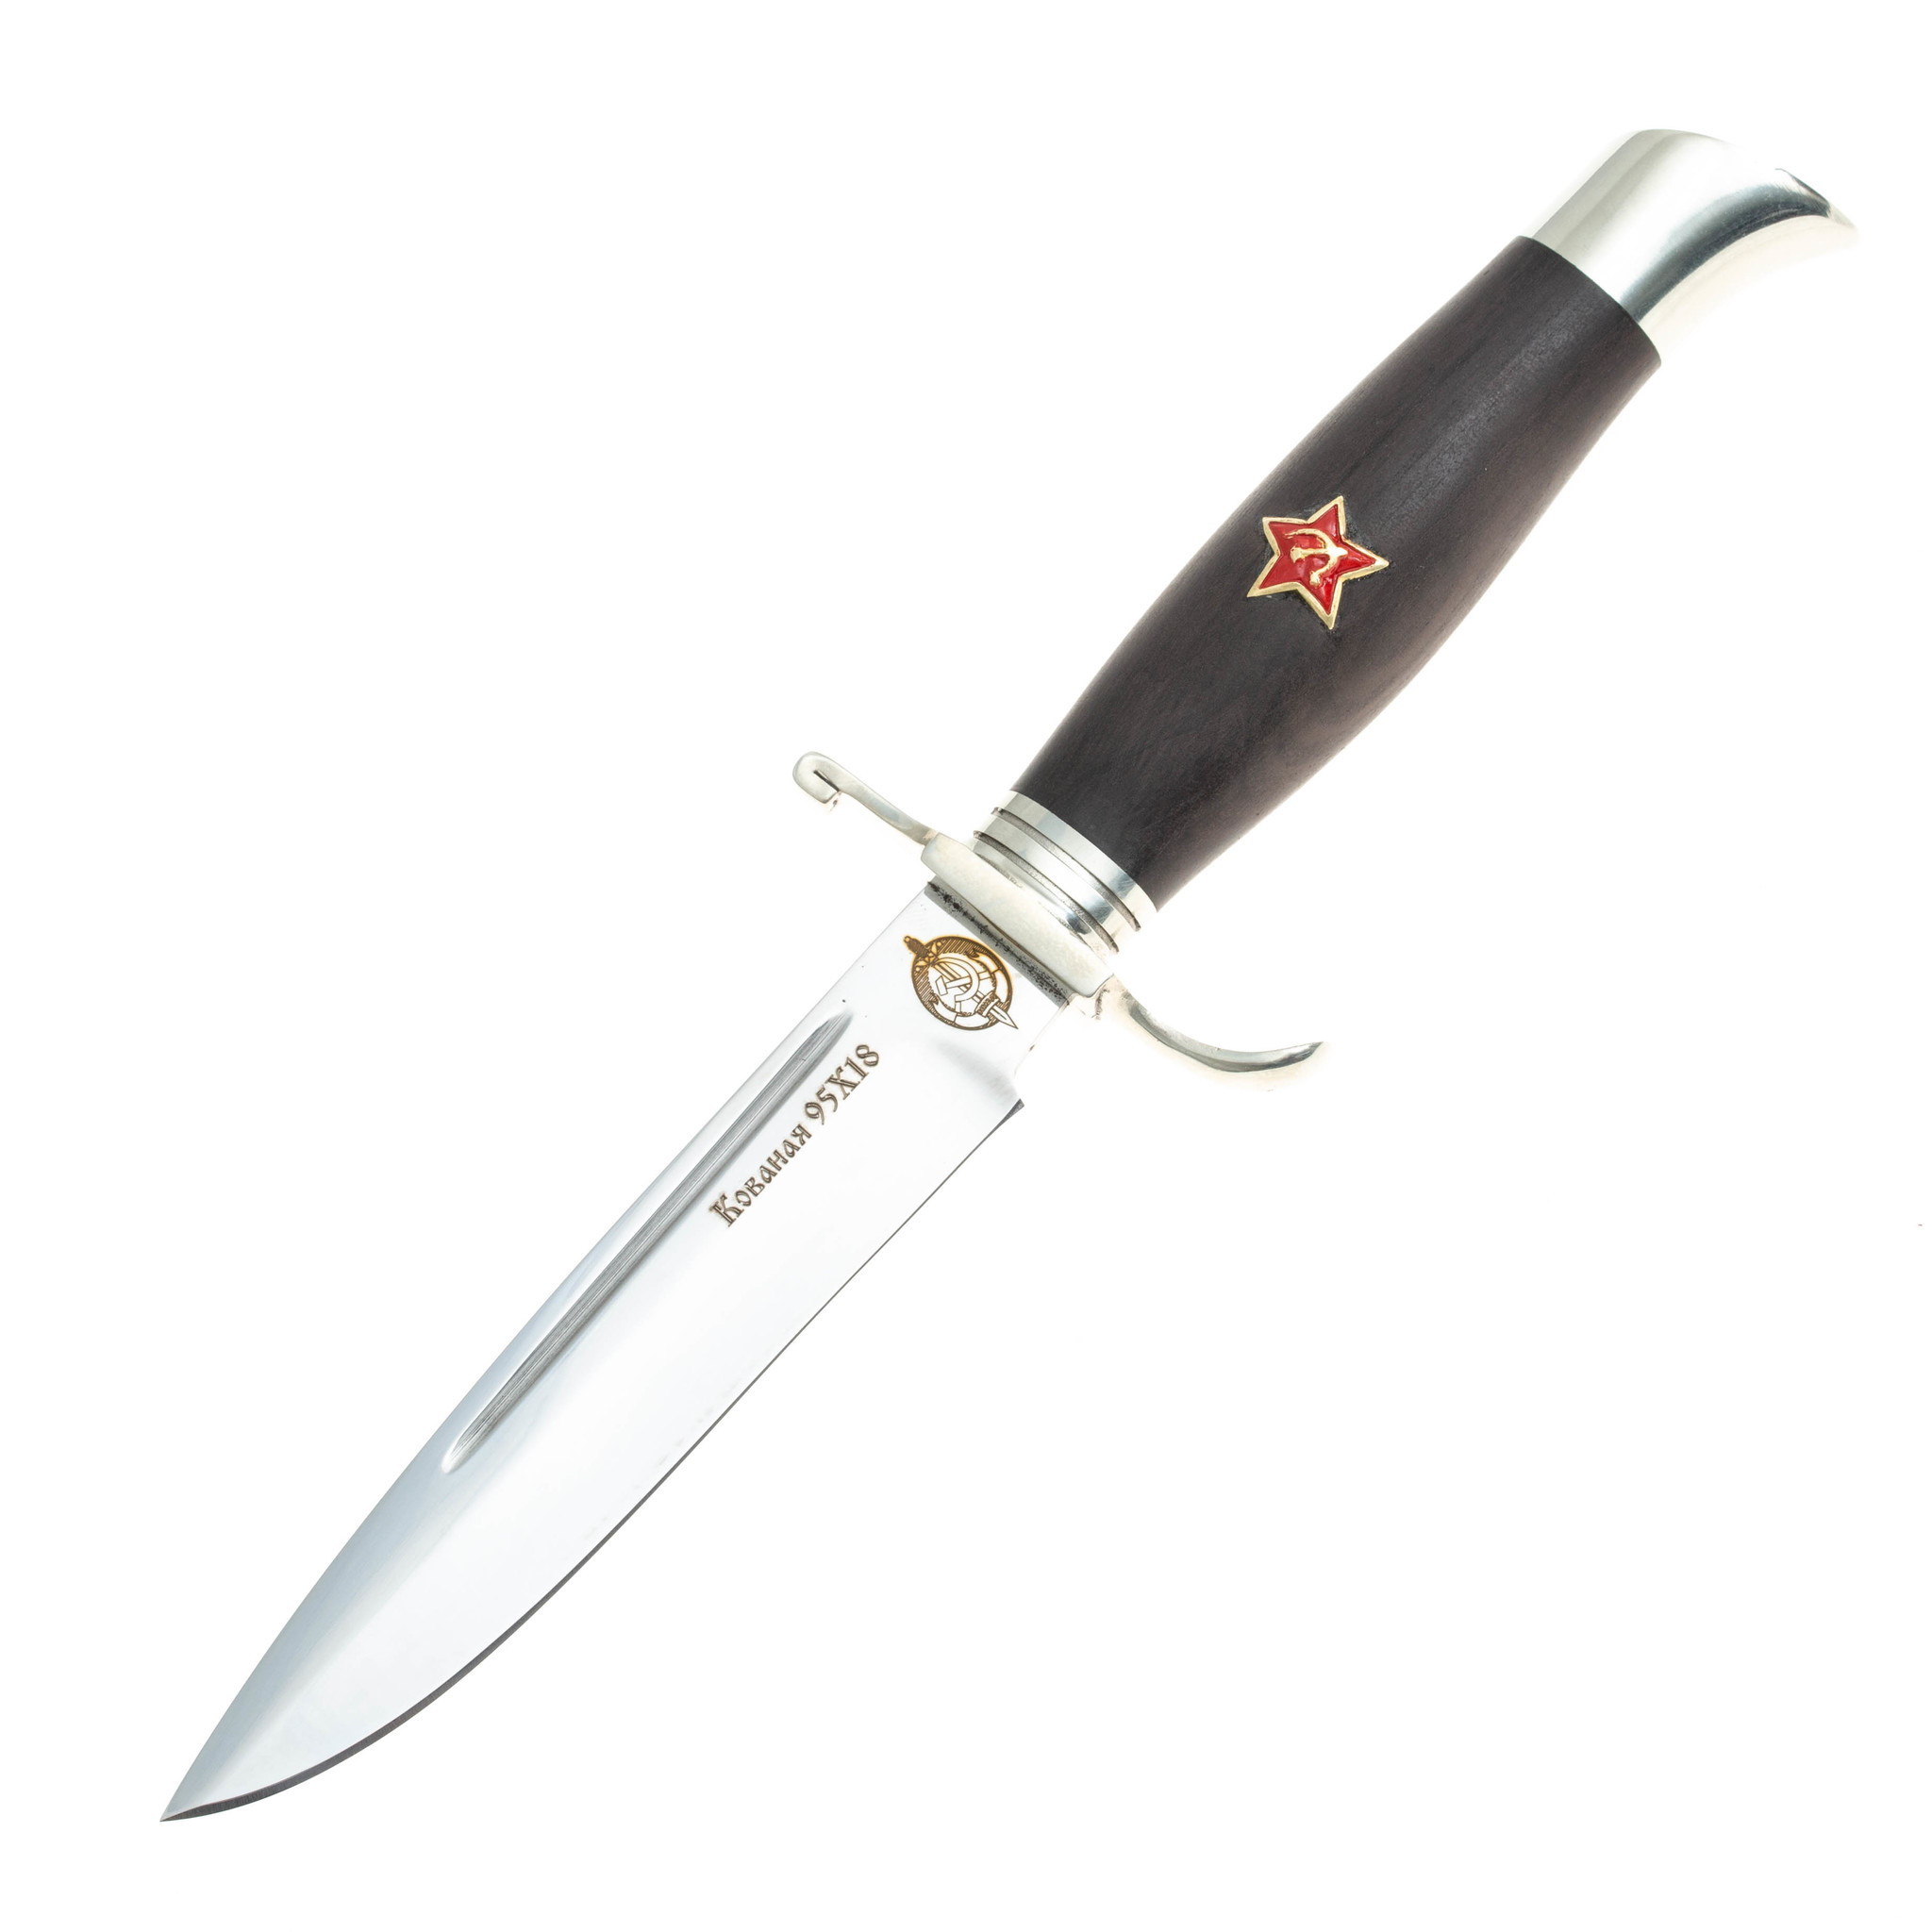 Нож Финка НКВД Звезда, сталь 95х18, граб нож туристический аир засапожный 2 сталь 95х18 рукоять граб